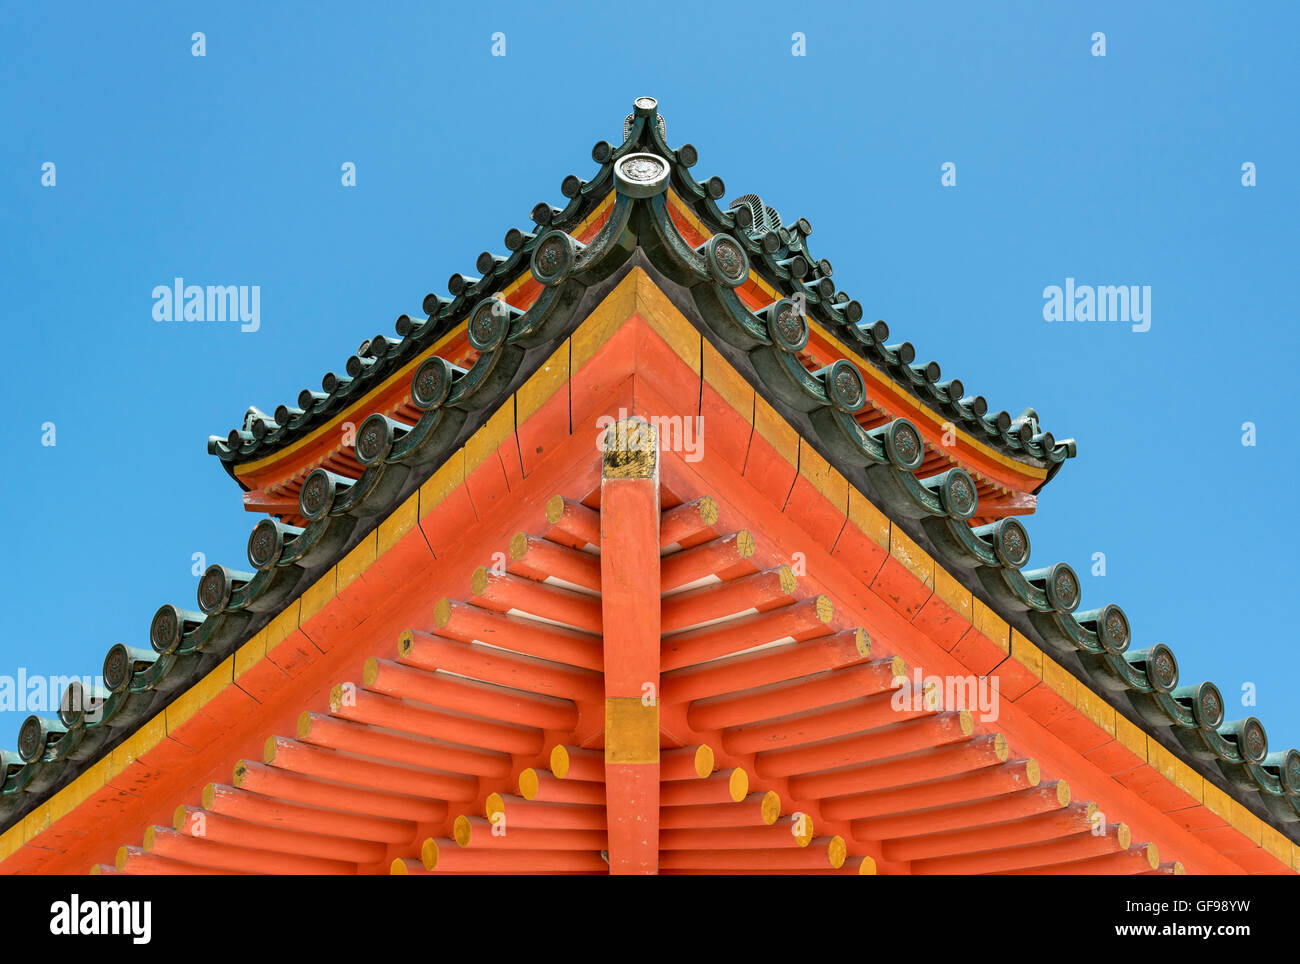 Detail of roof of Main gate of Heian Jingu, Shinto Shrine, Kyoto, Japan Stock Photo